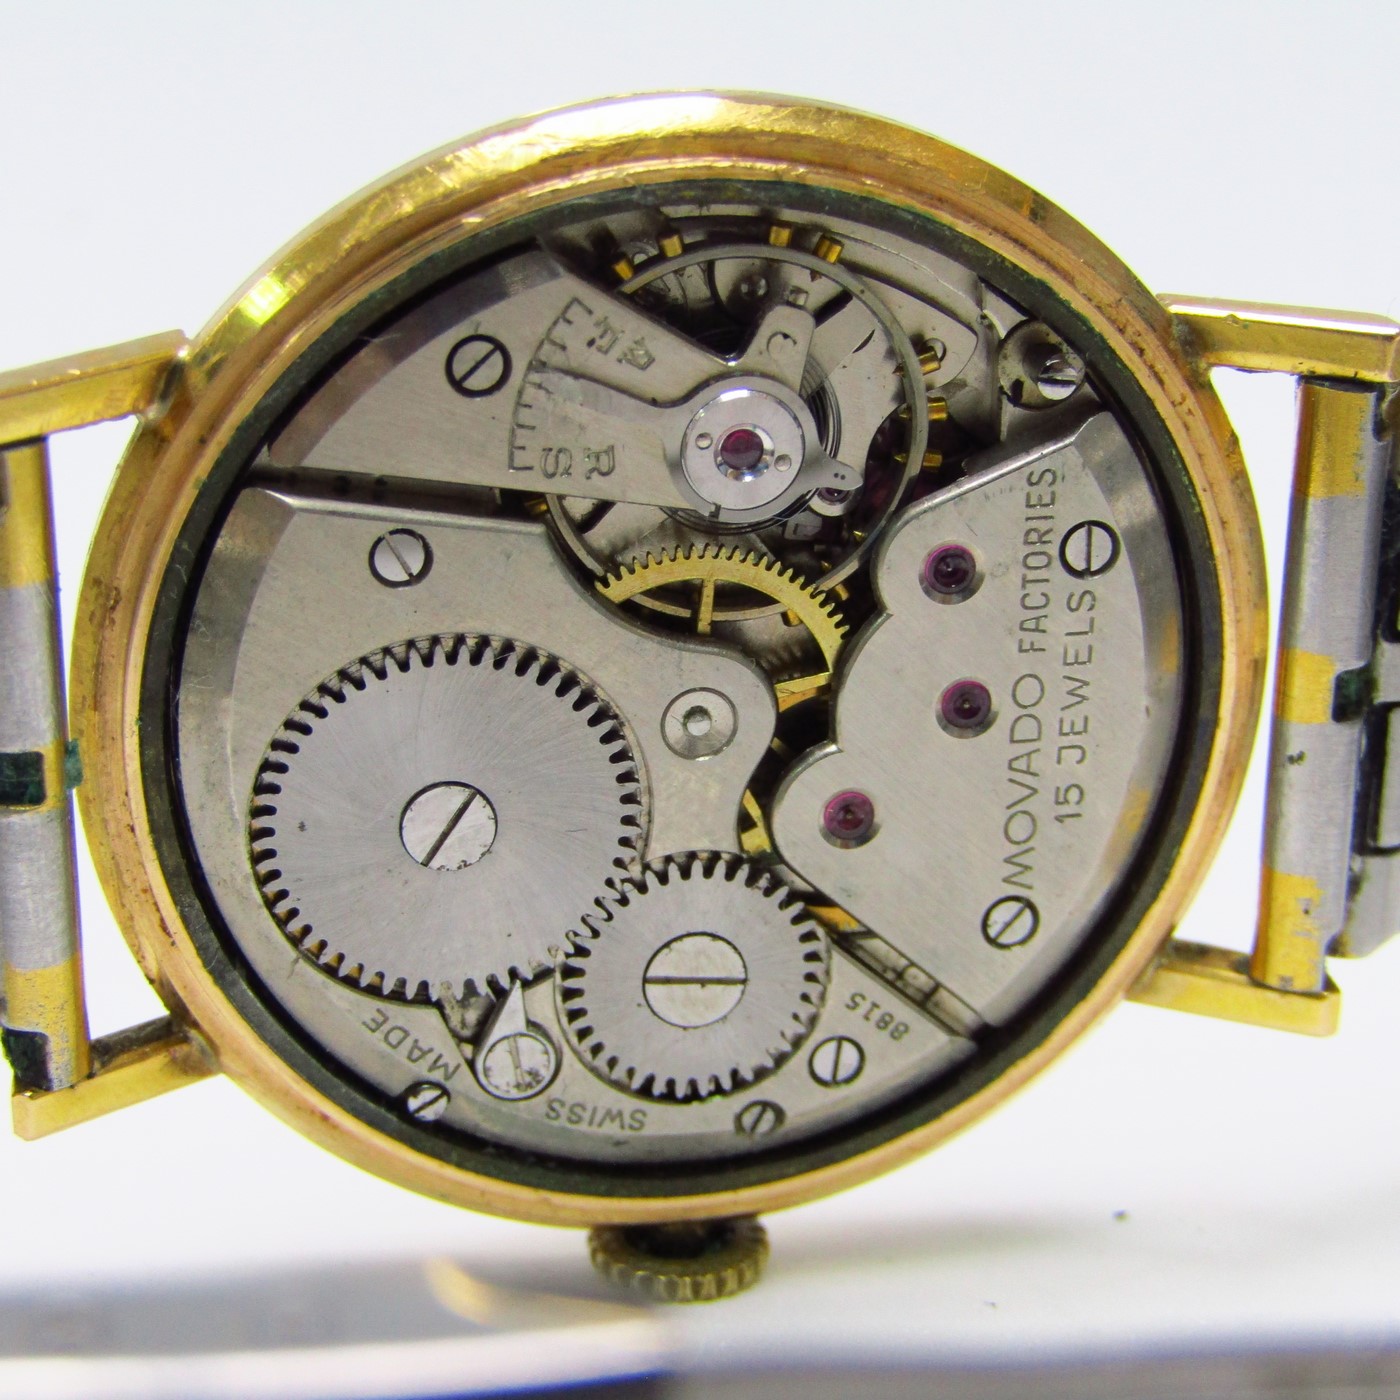 Componentes de un reloj de pulsera - Joyería San Eloy - Tradición